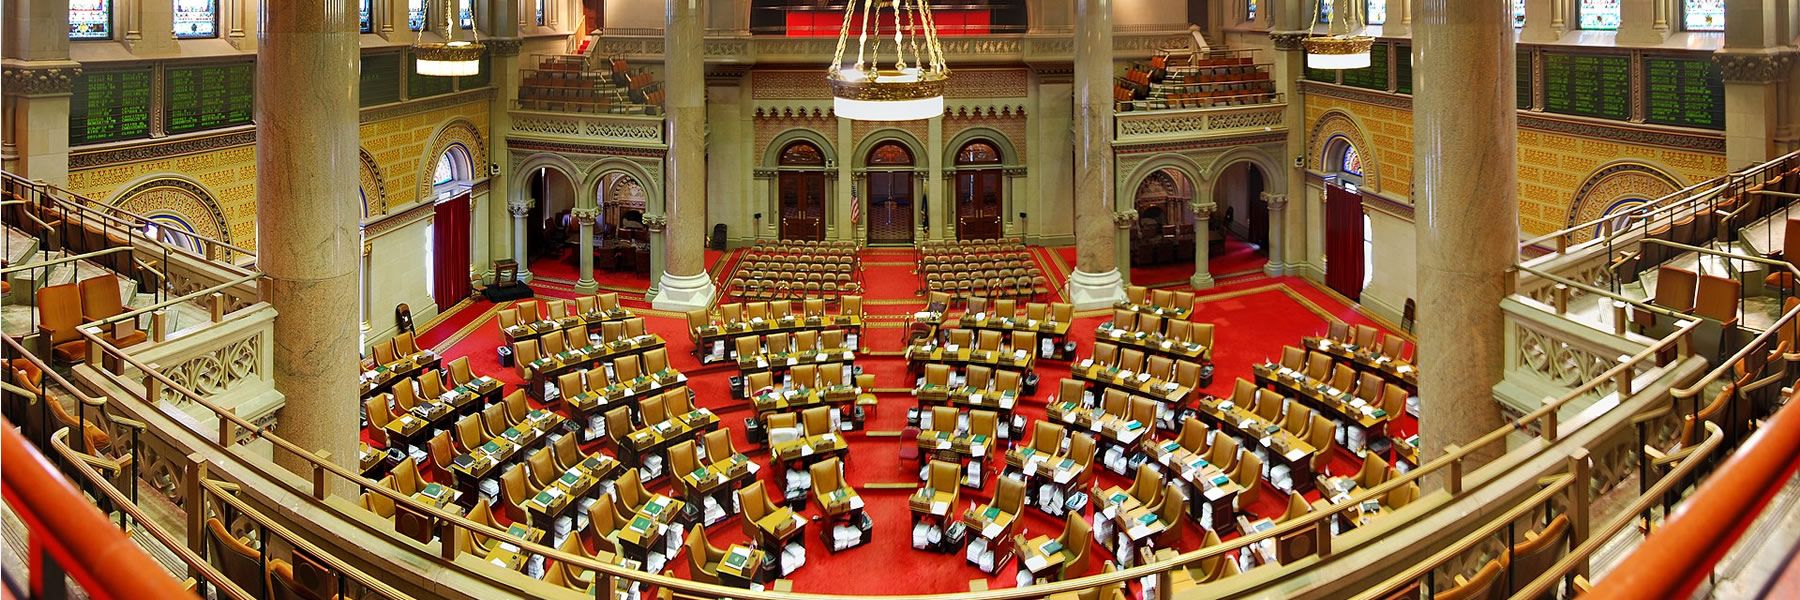 NY State Assembly